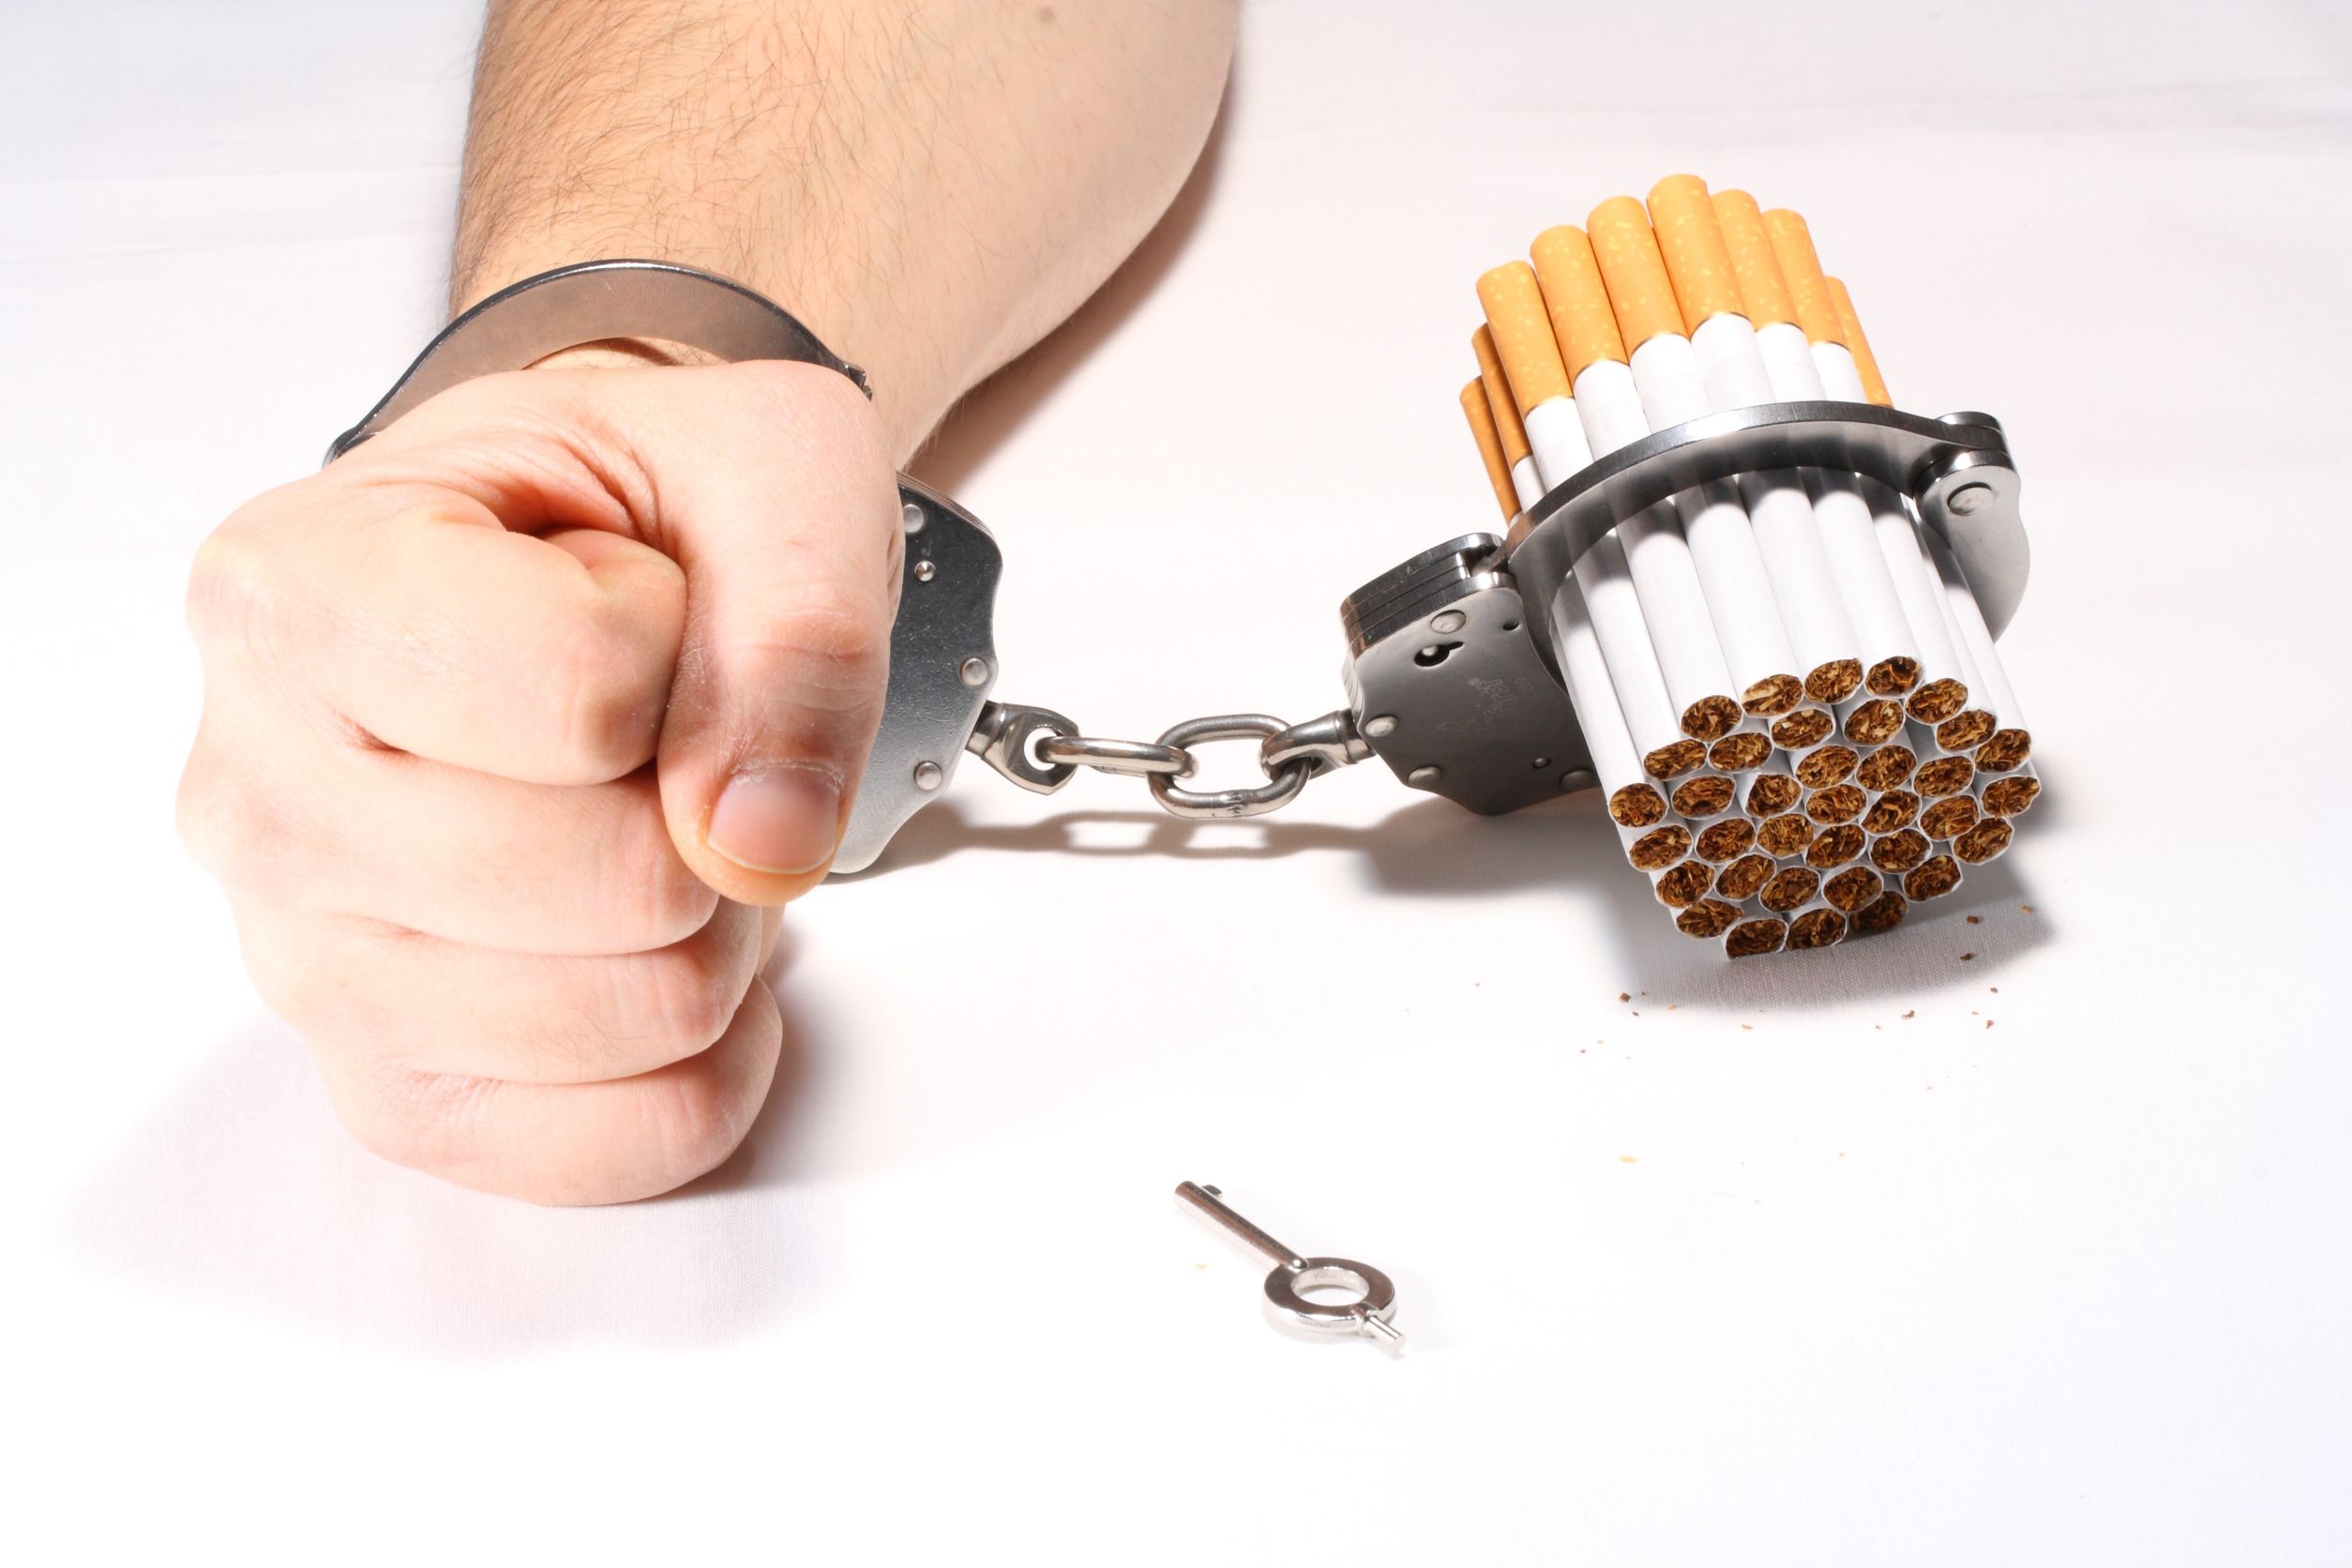 Nikotinfüggőség tünetei és kezelése - HáziPatika